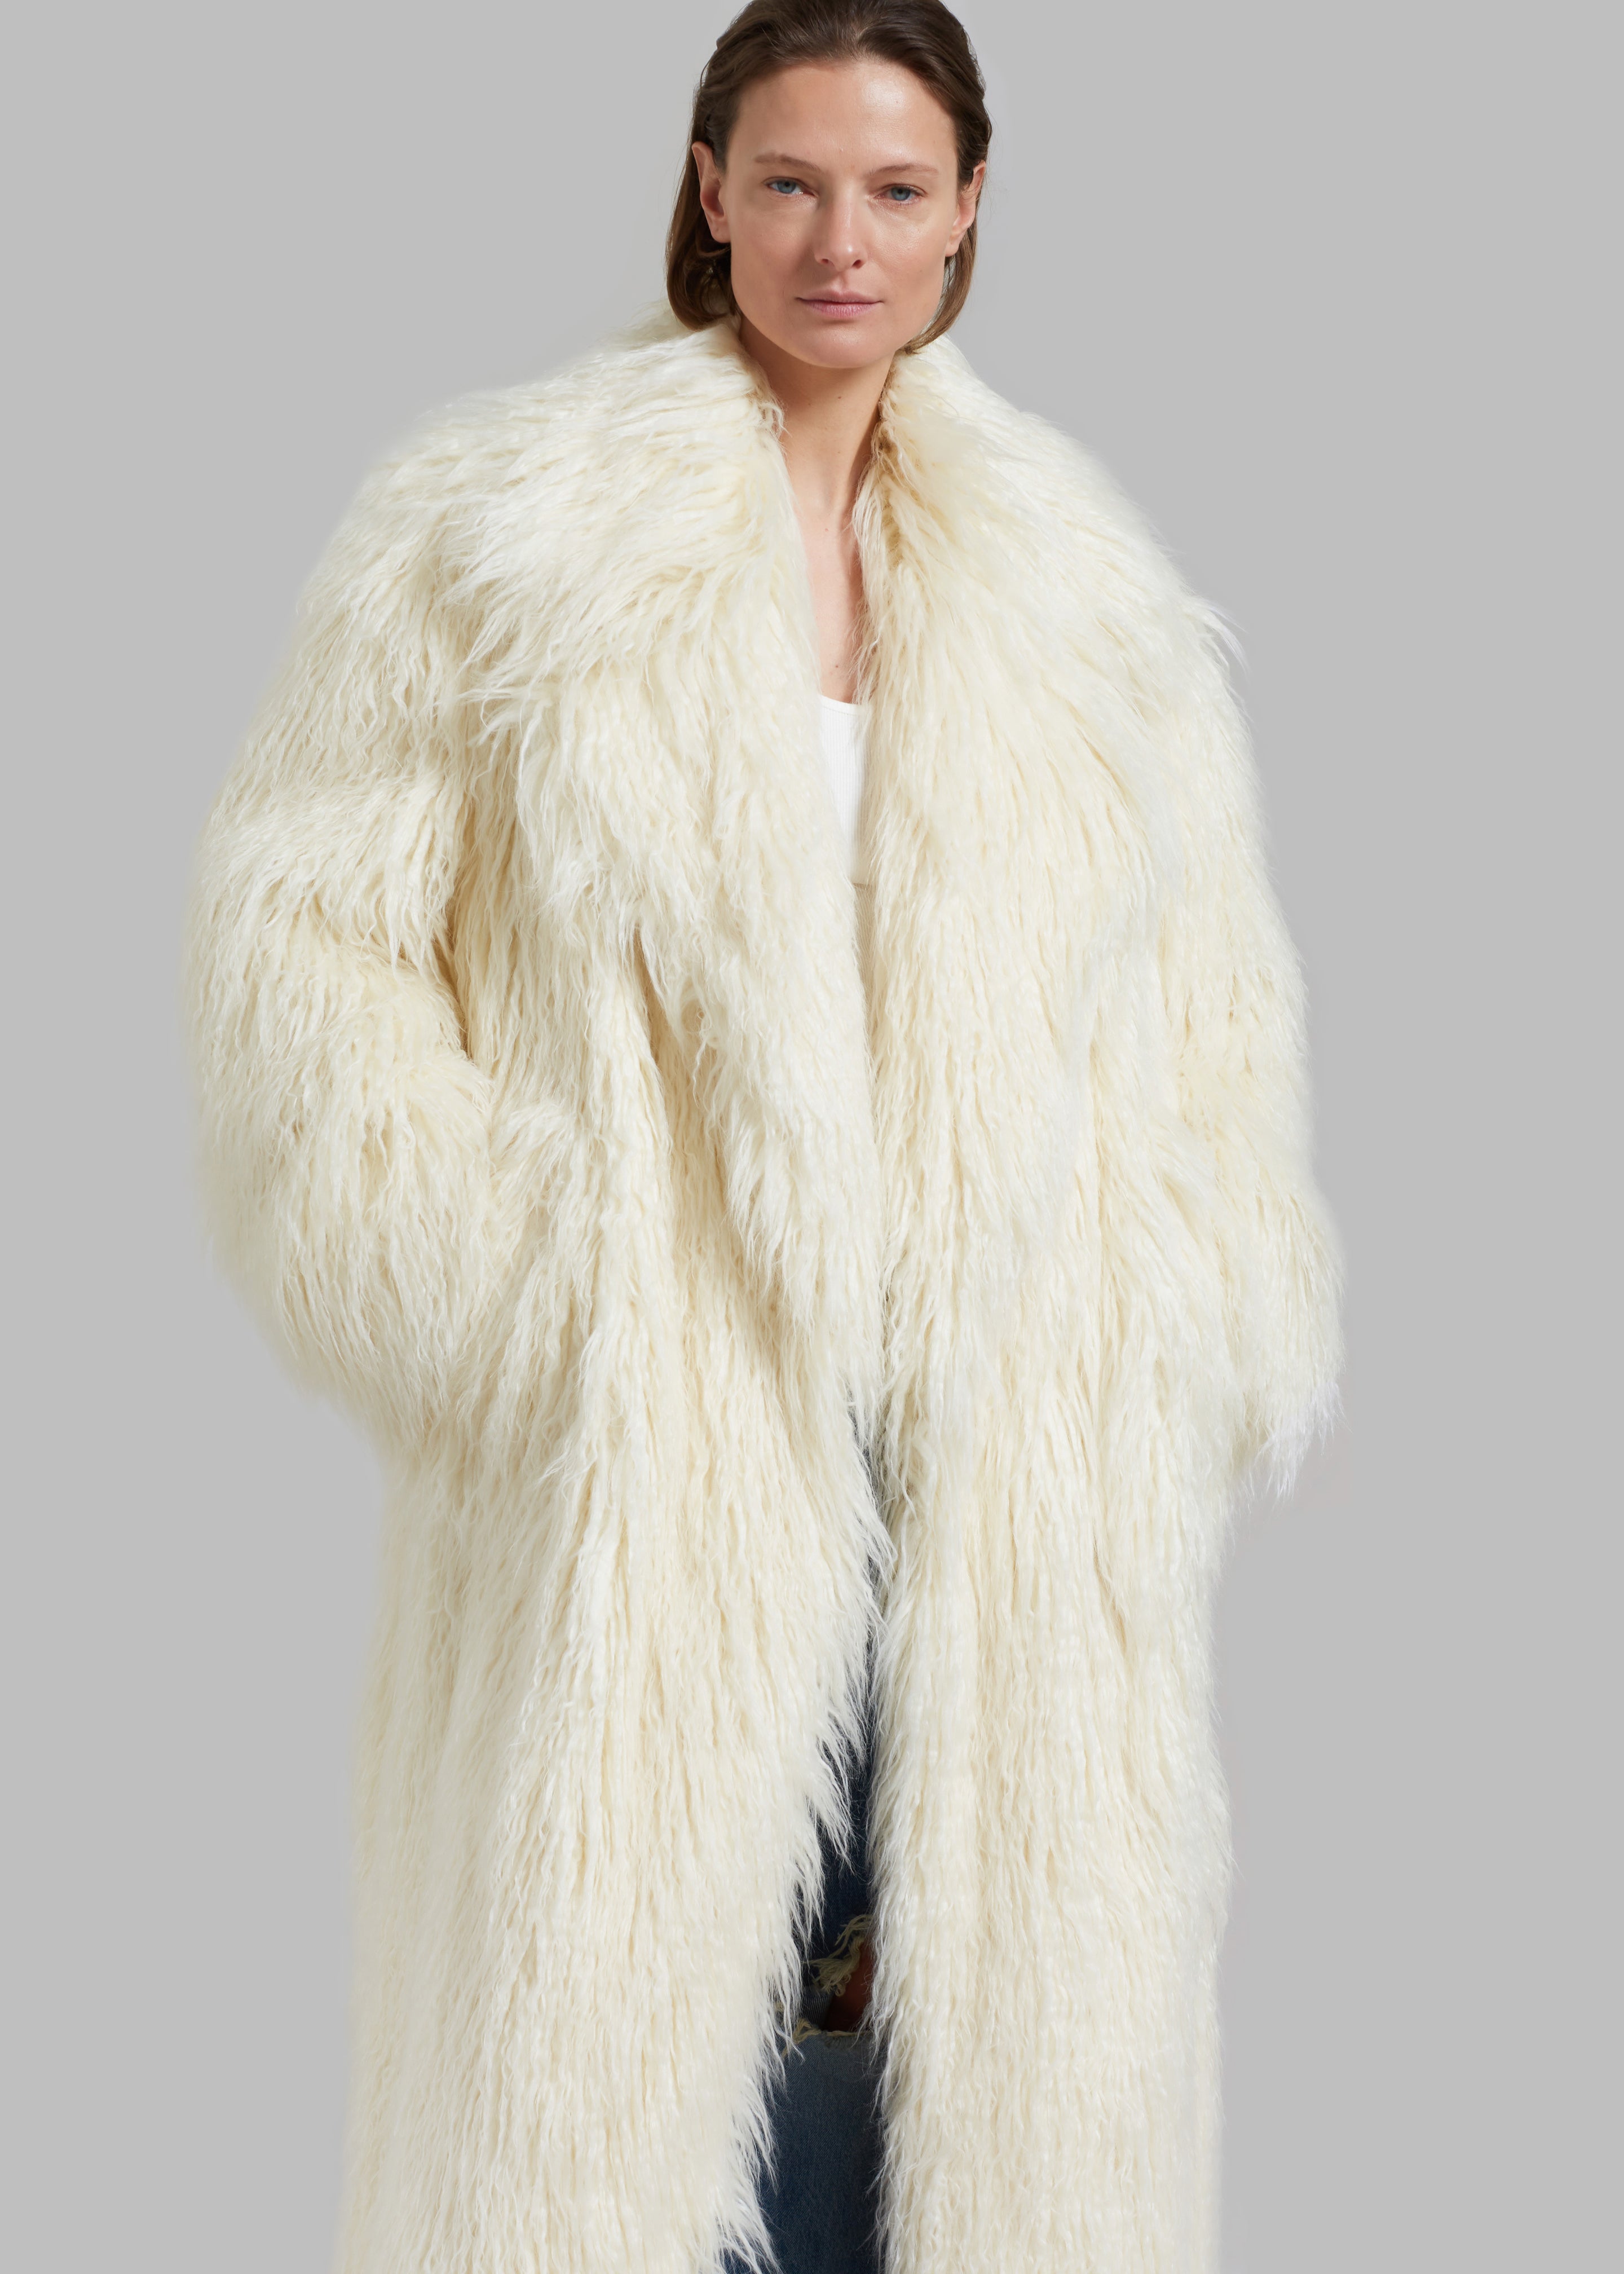 Nicole Long Faux Fur Coat - Off White - 4